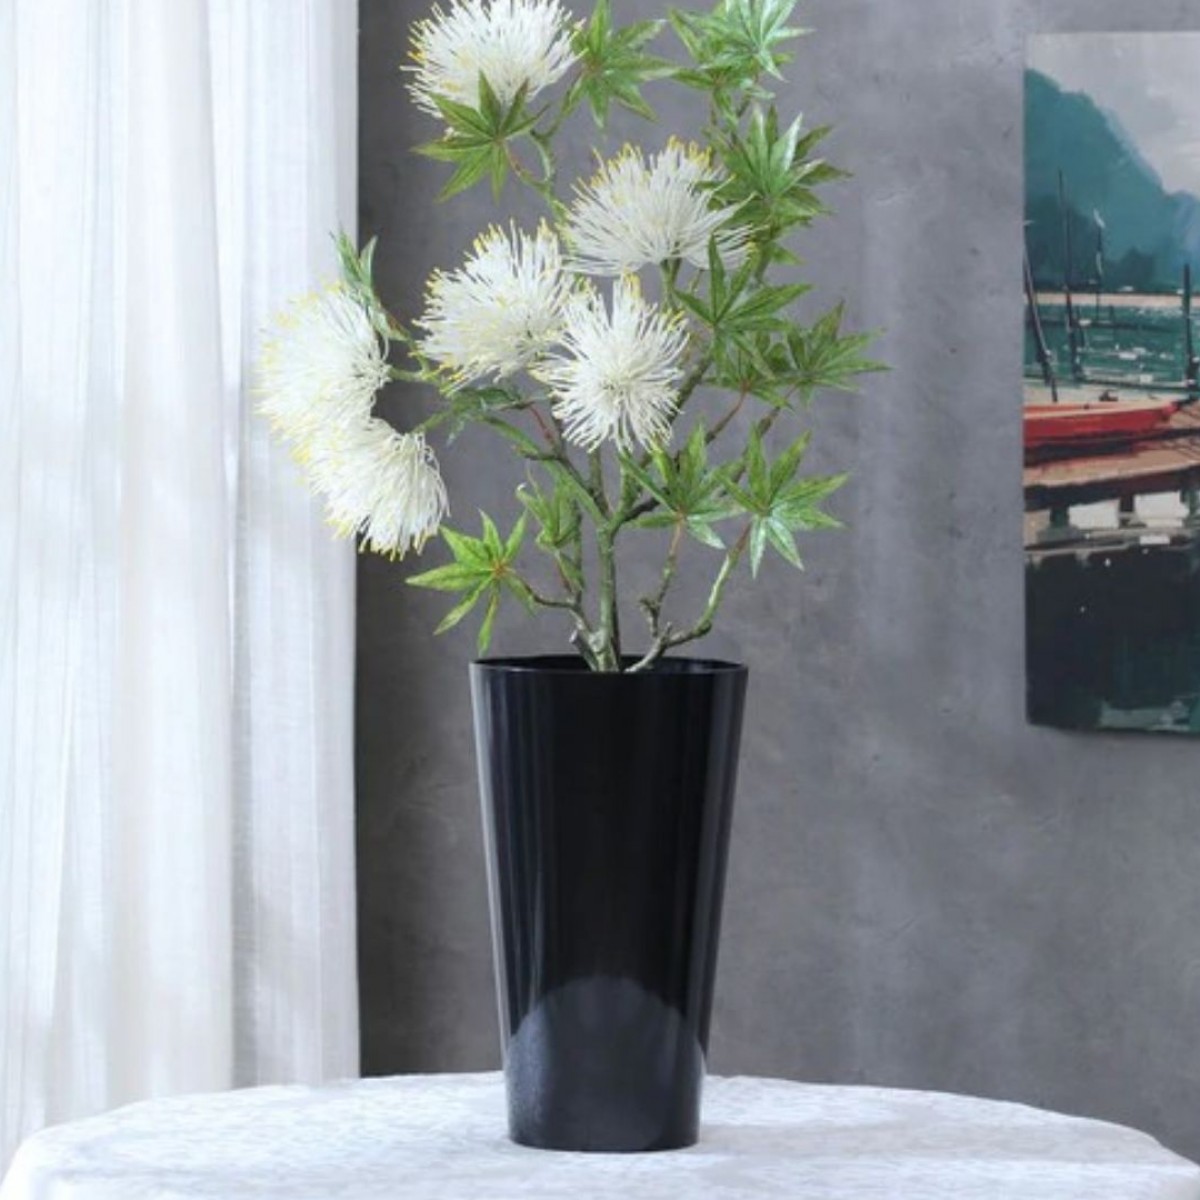 5124 Conical Black 15x25cm Acrylic Vase - 1 No